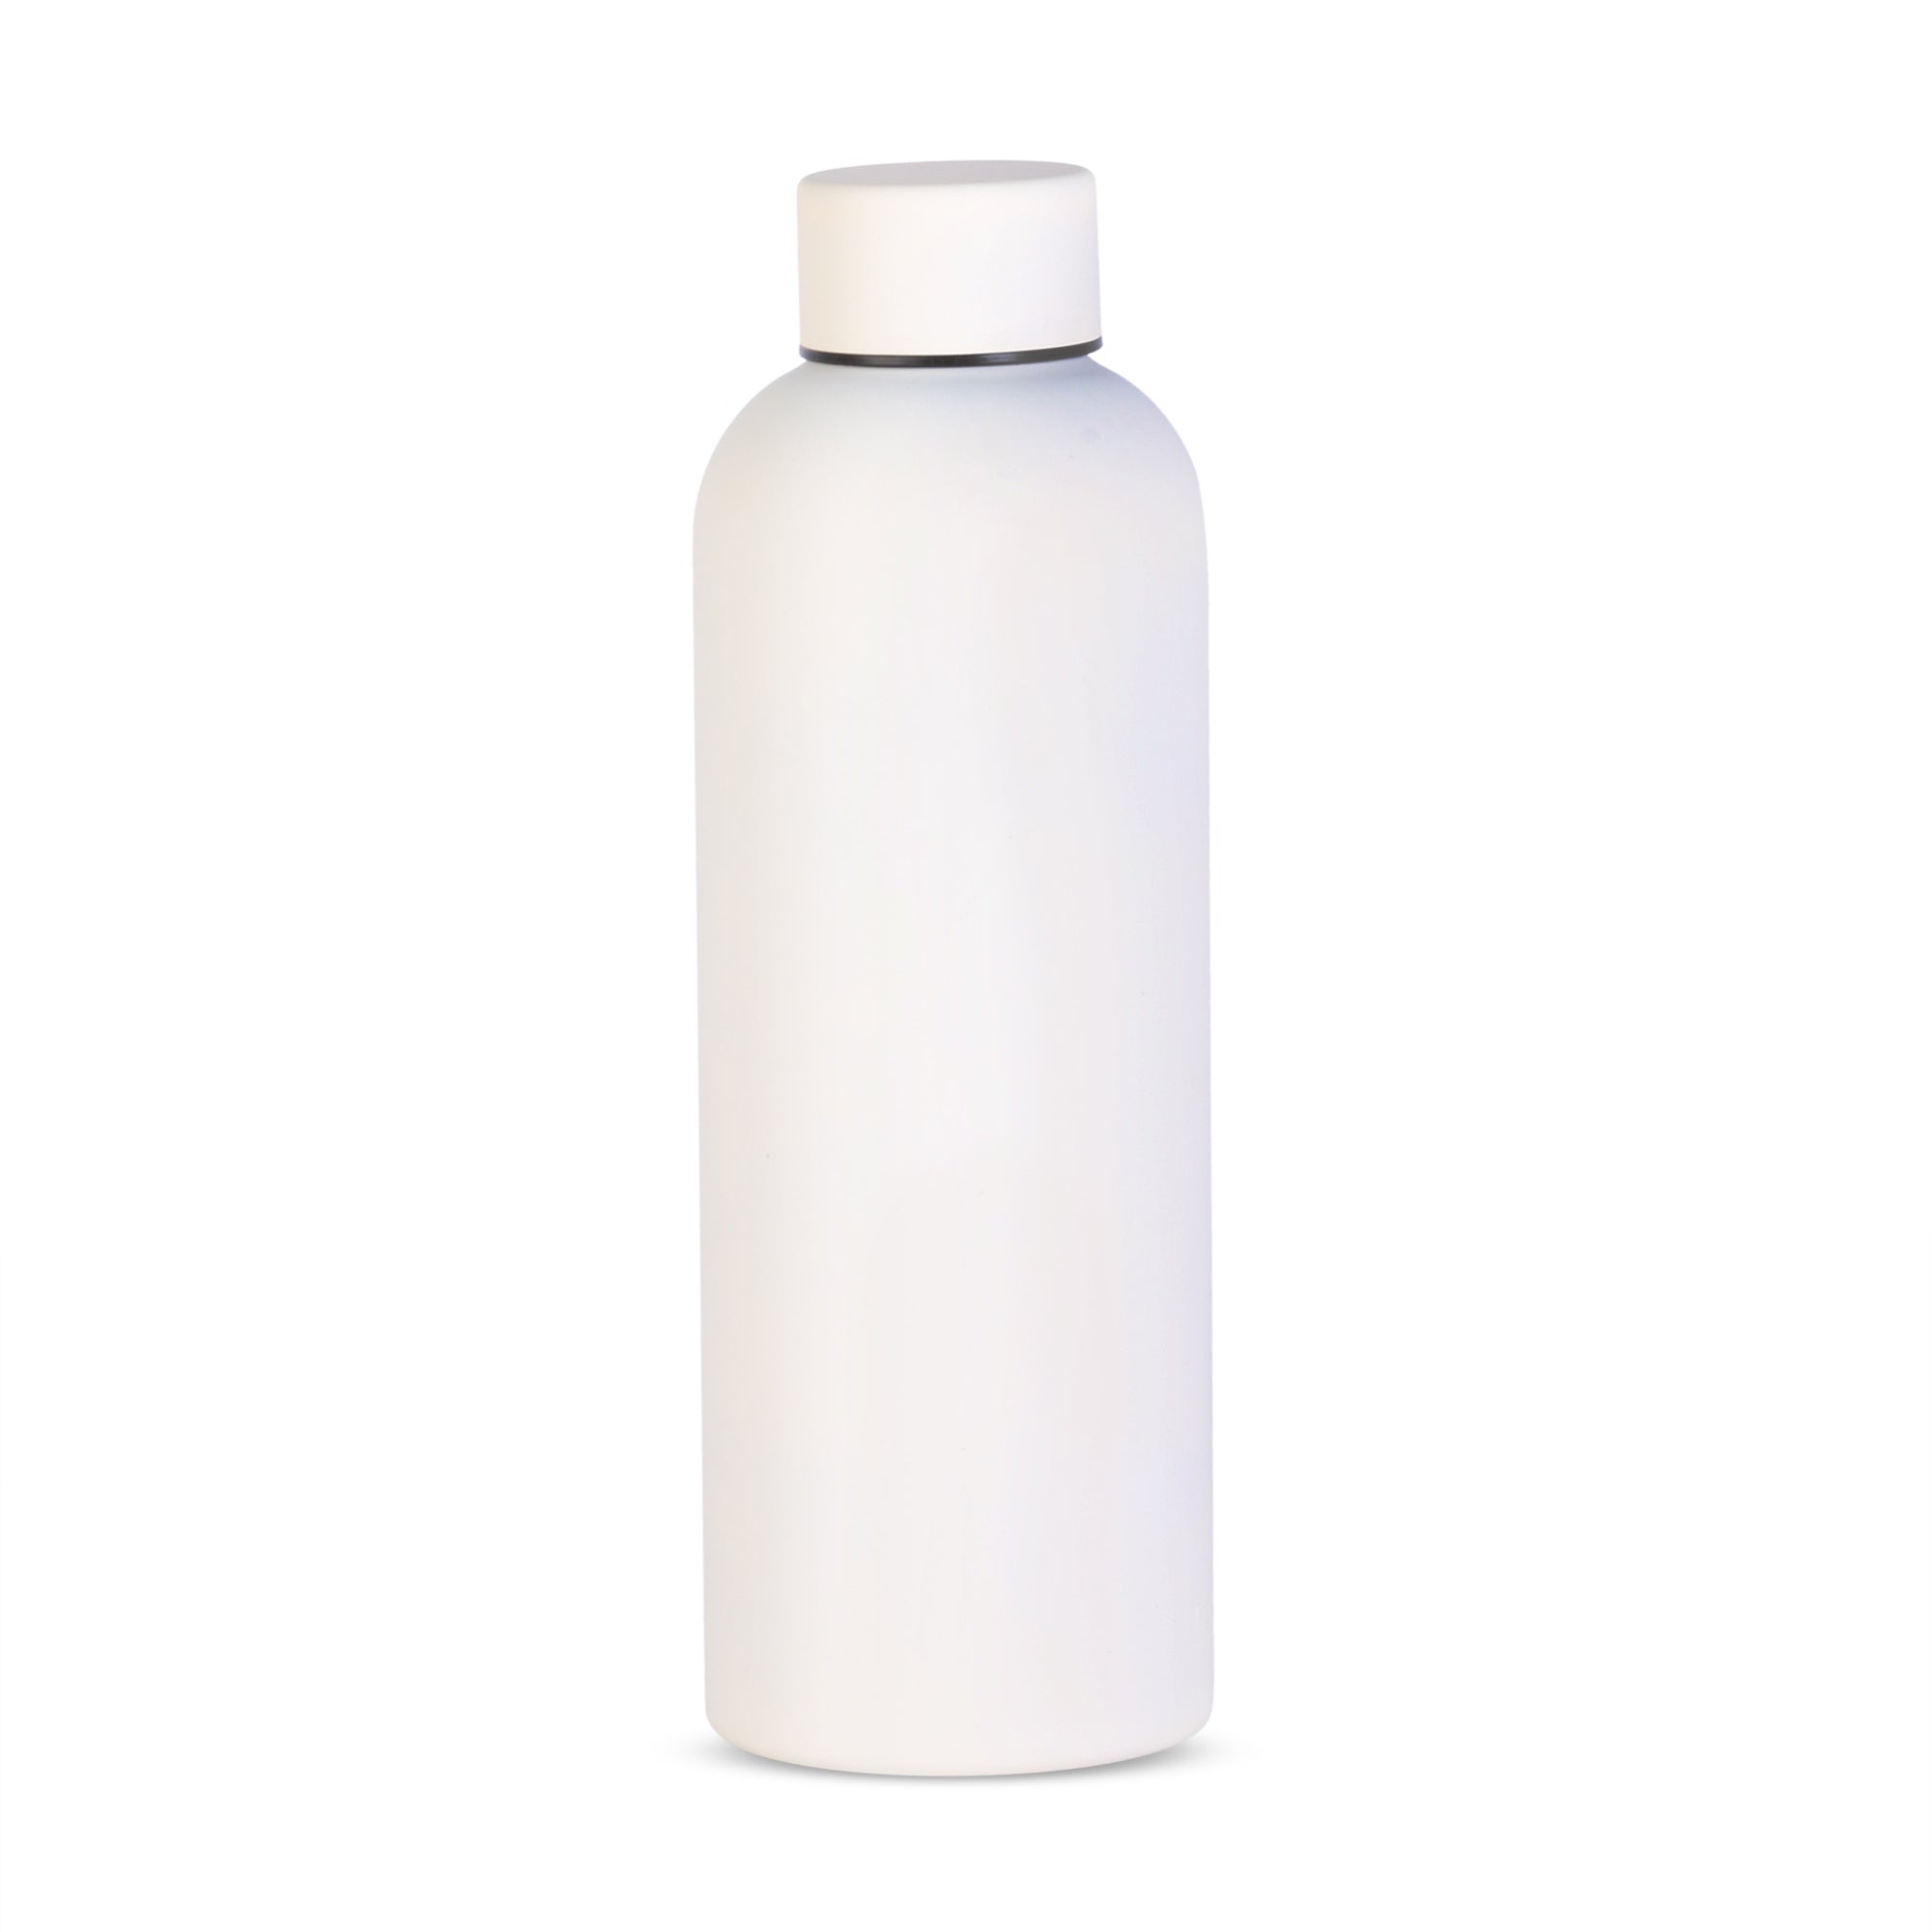 Bottle Rubberish Large White 500ml